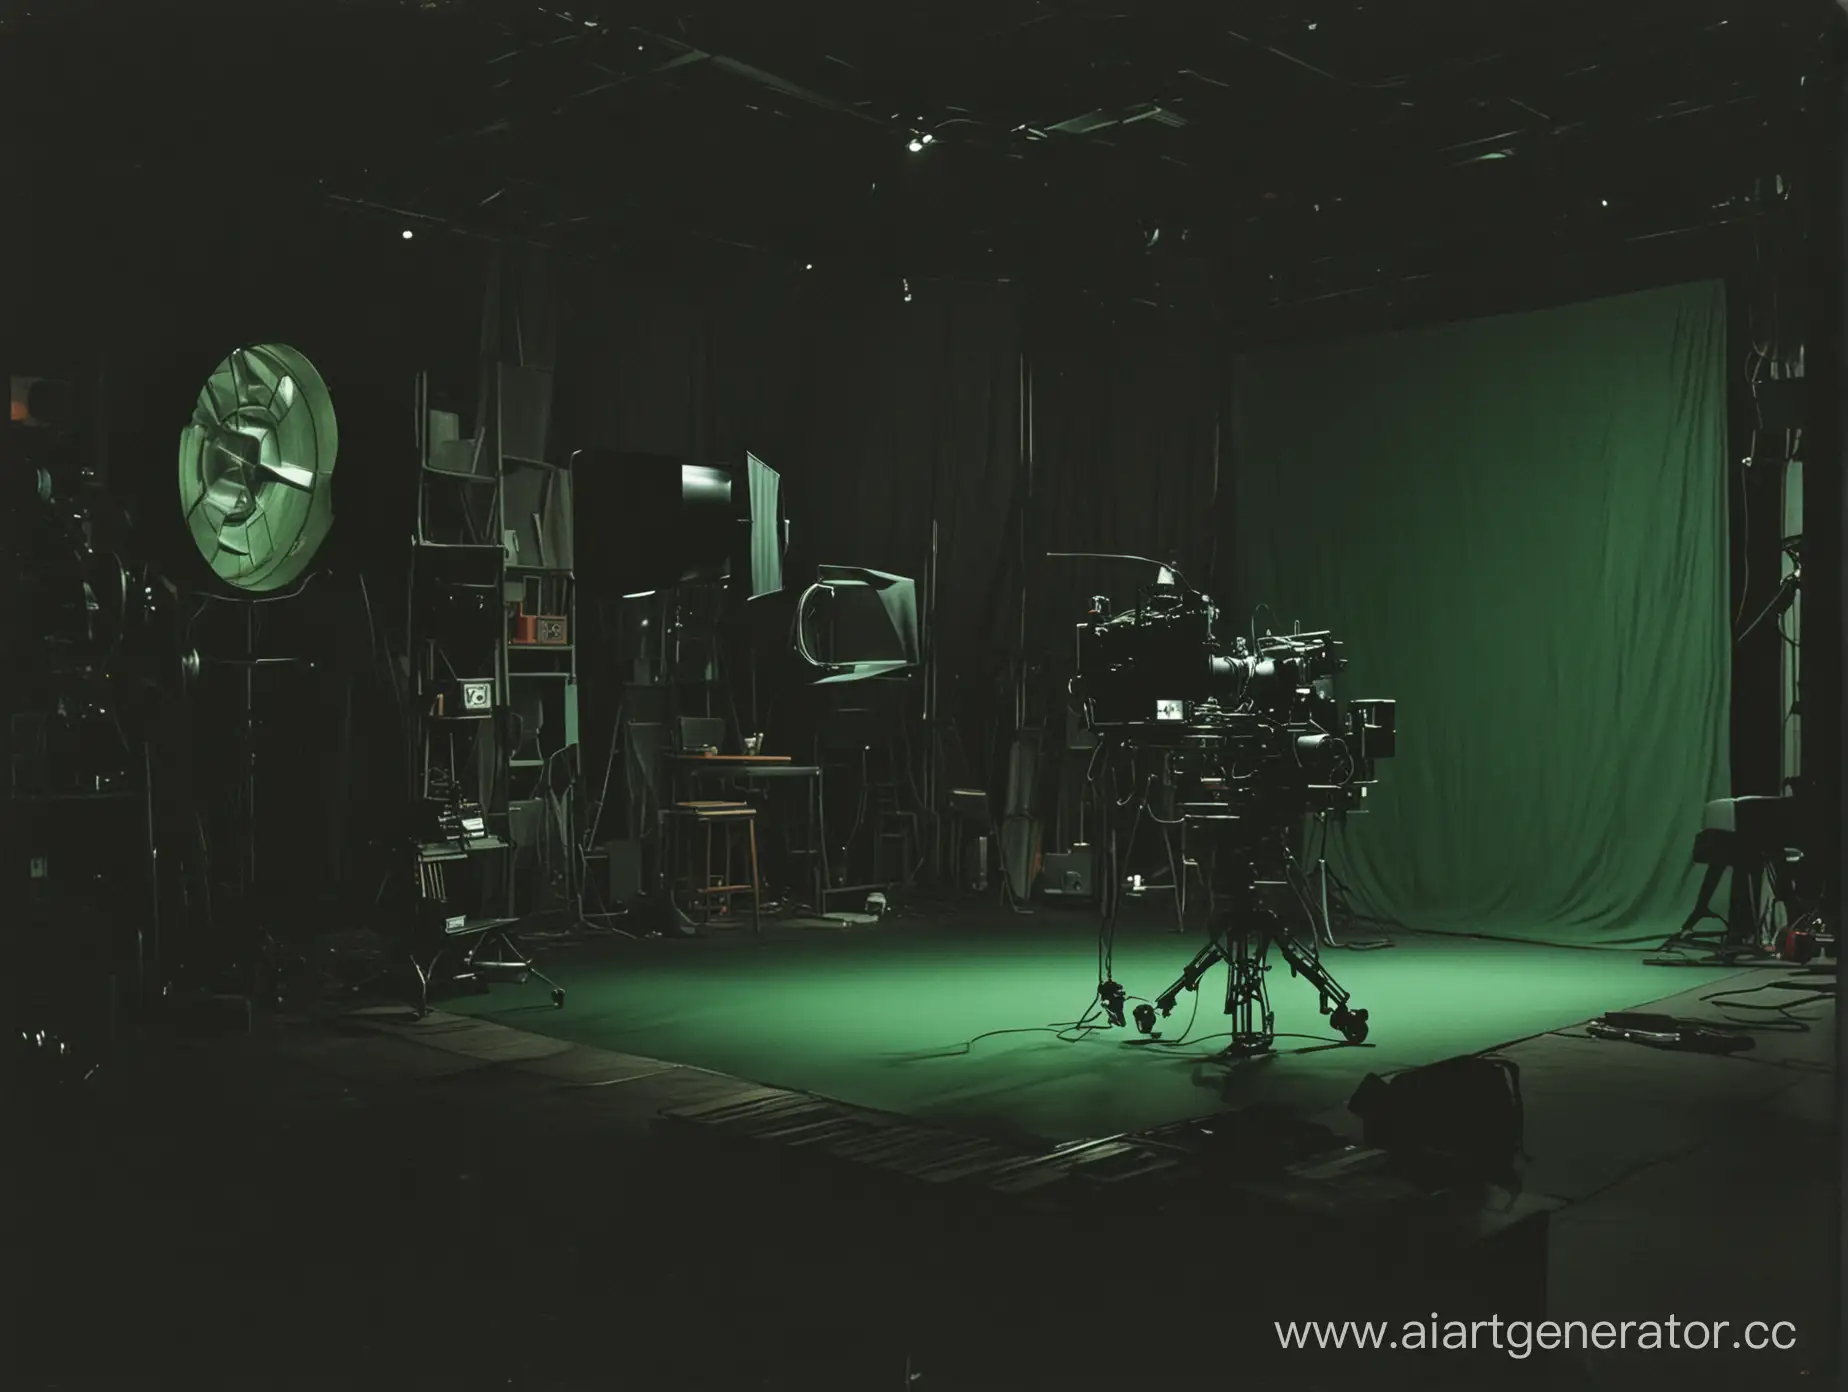 Cъемочная площадка кино, темная с зеленым